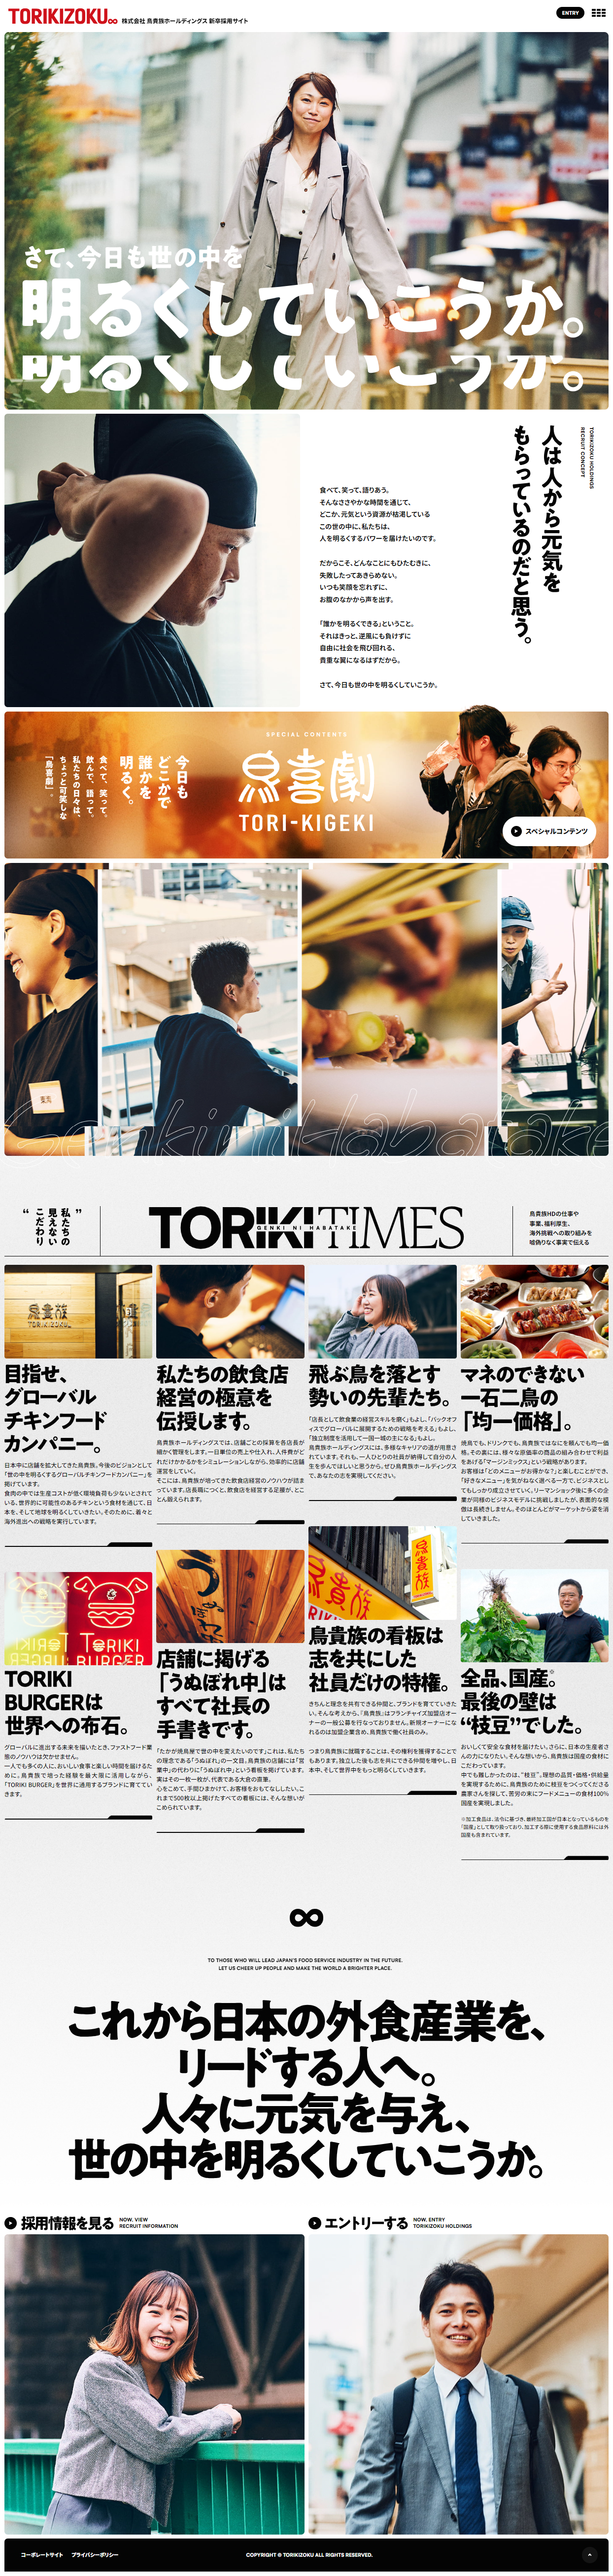 TORIKIZOKU 新卒採用サイト_pc_1